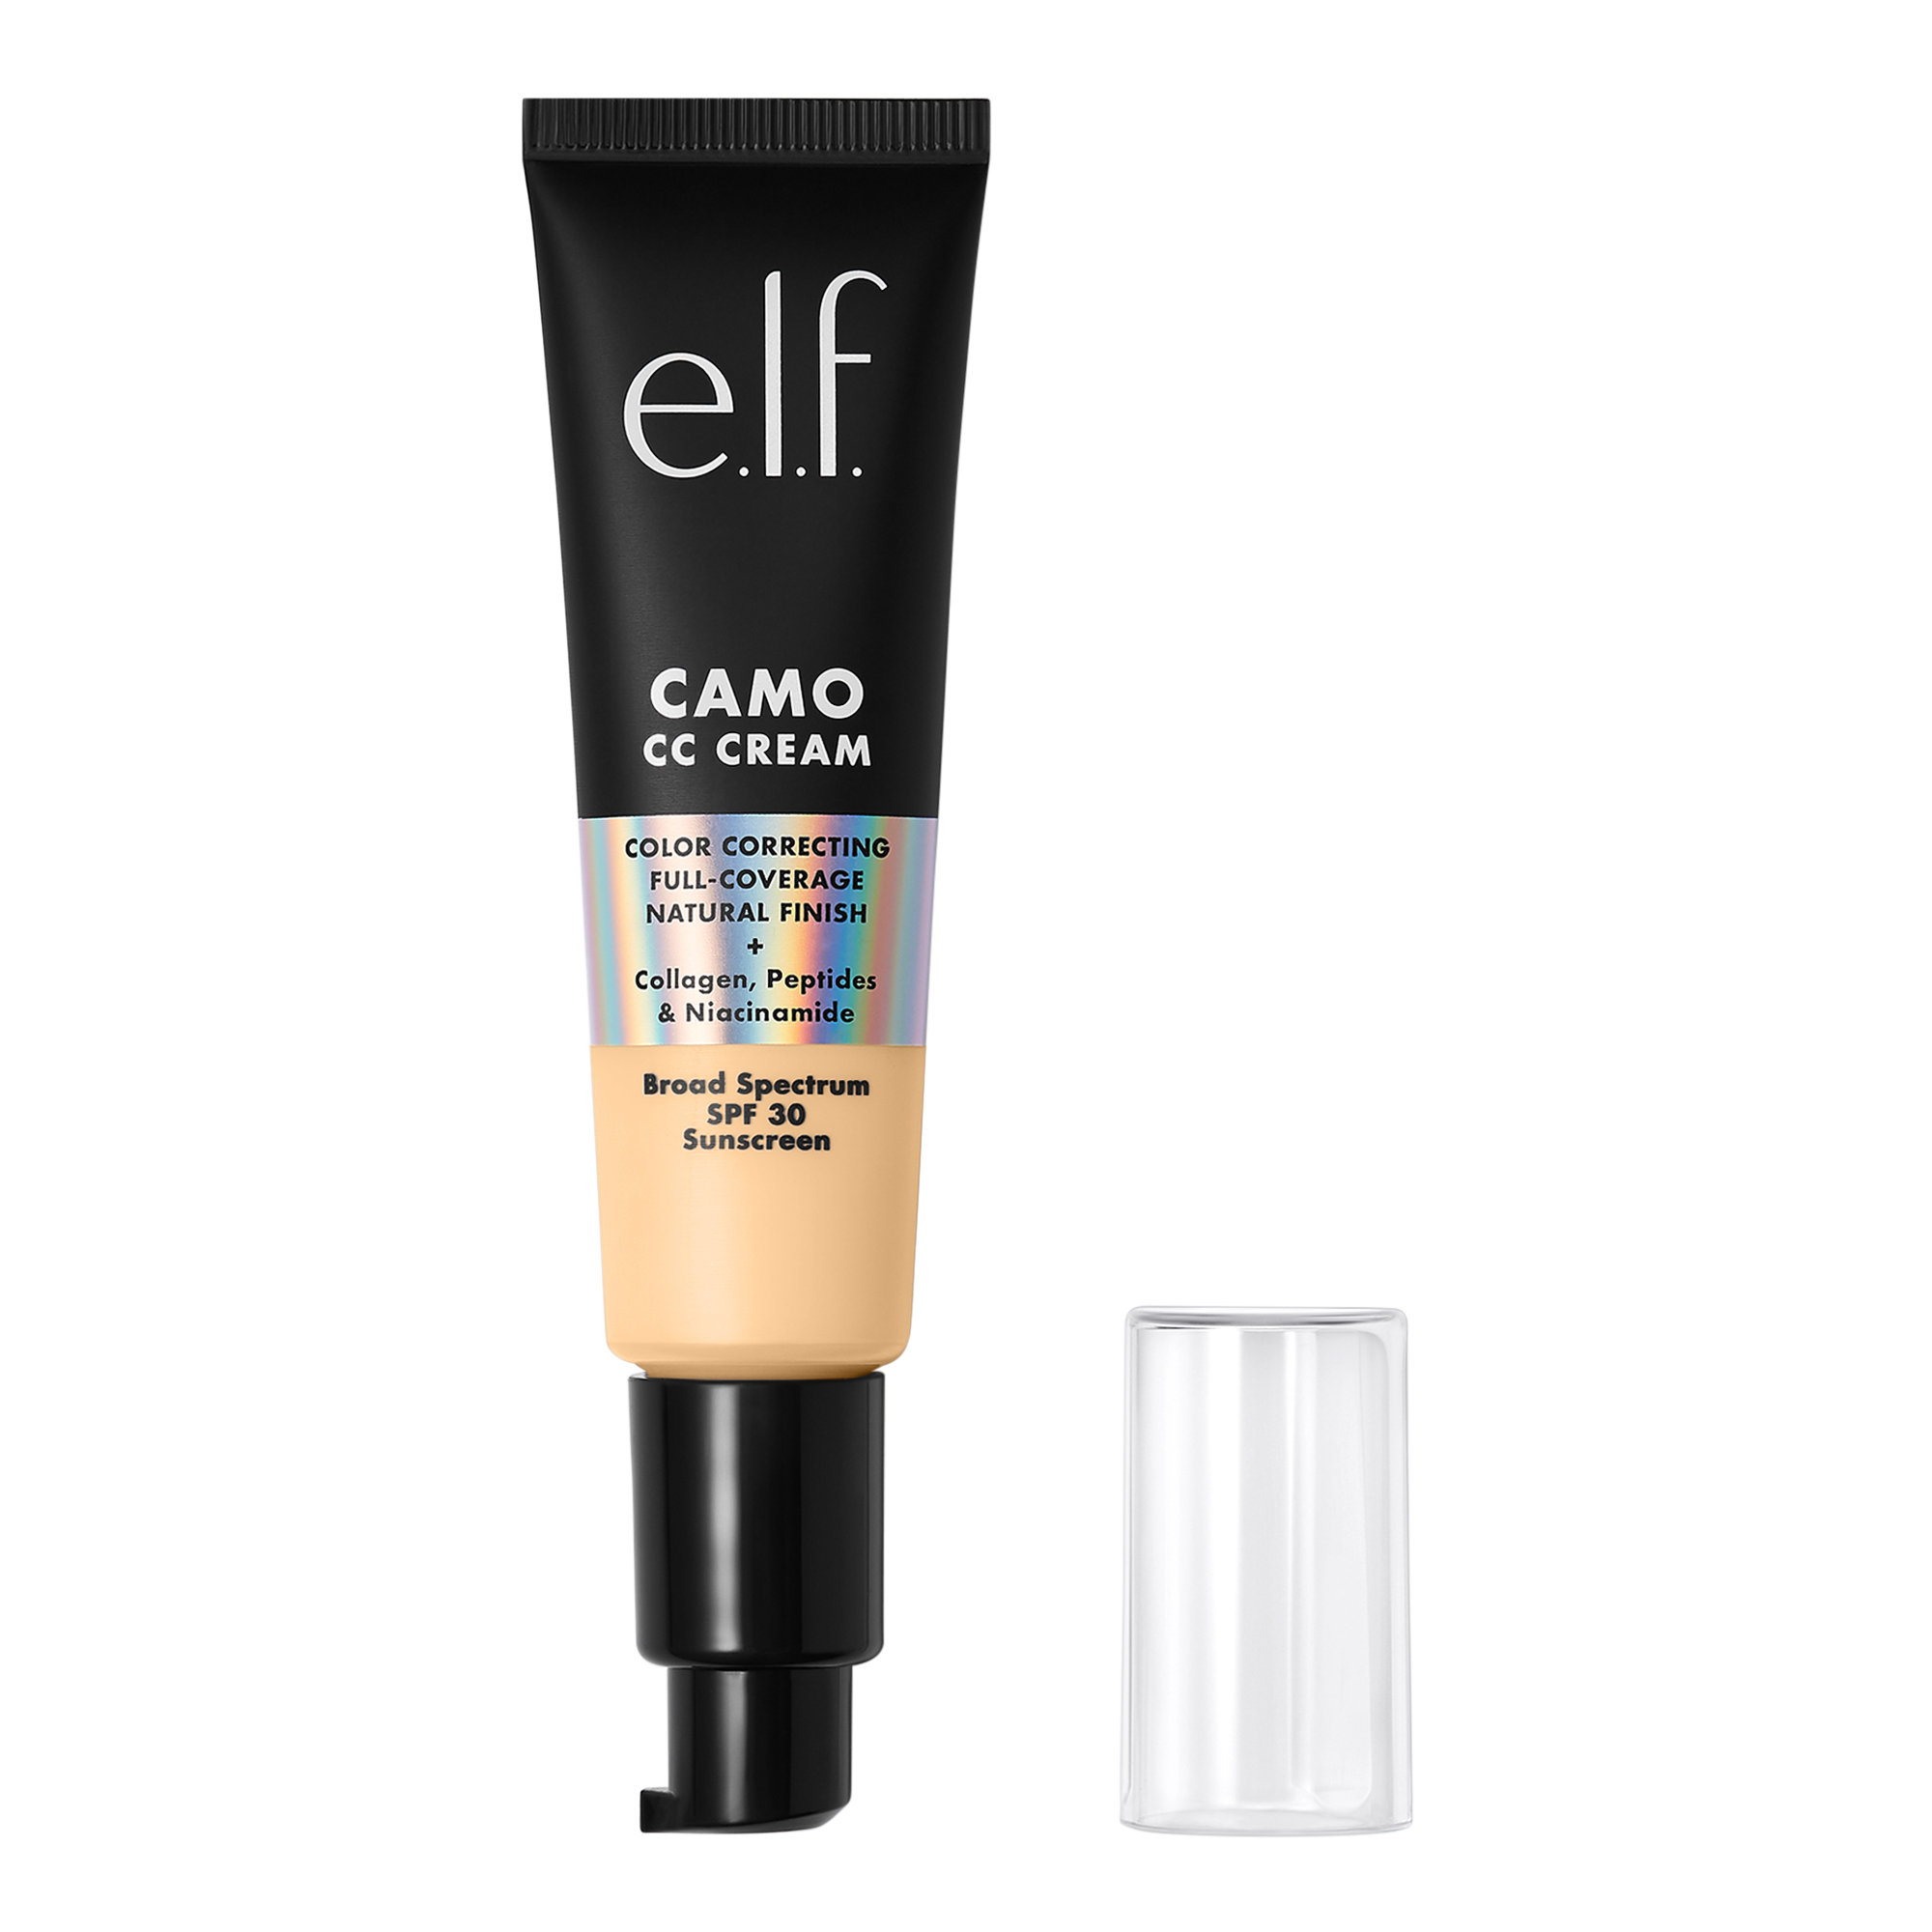 e.l.f. Camo CC Cream, Fair 140 W - image 4 of 8